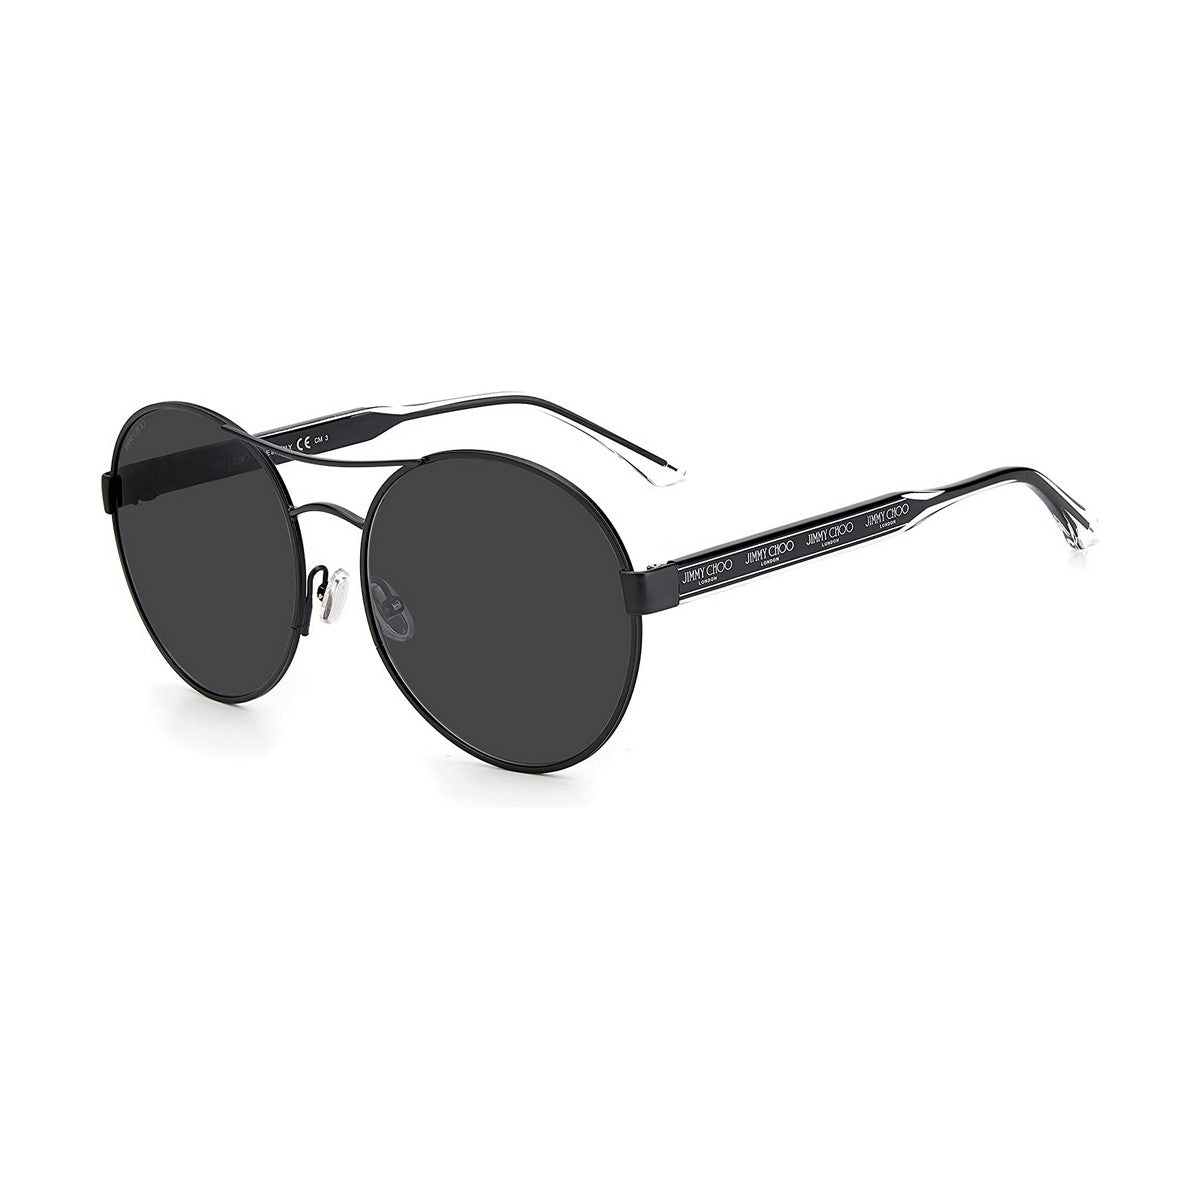 Men's Sunglasses Jimmy Choo